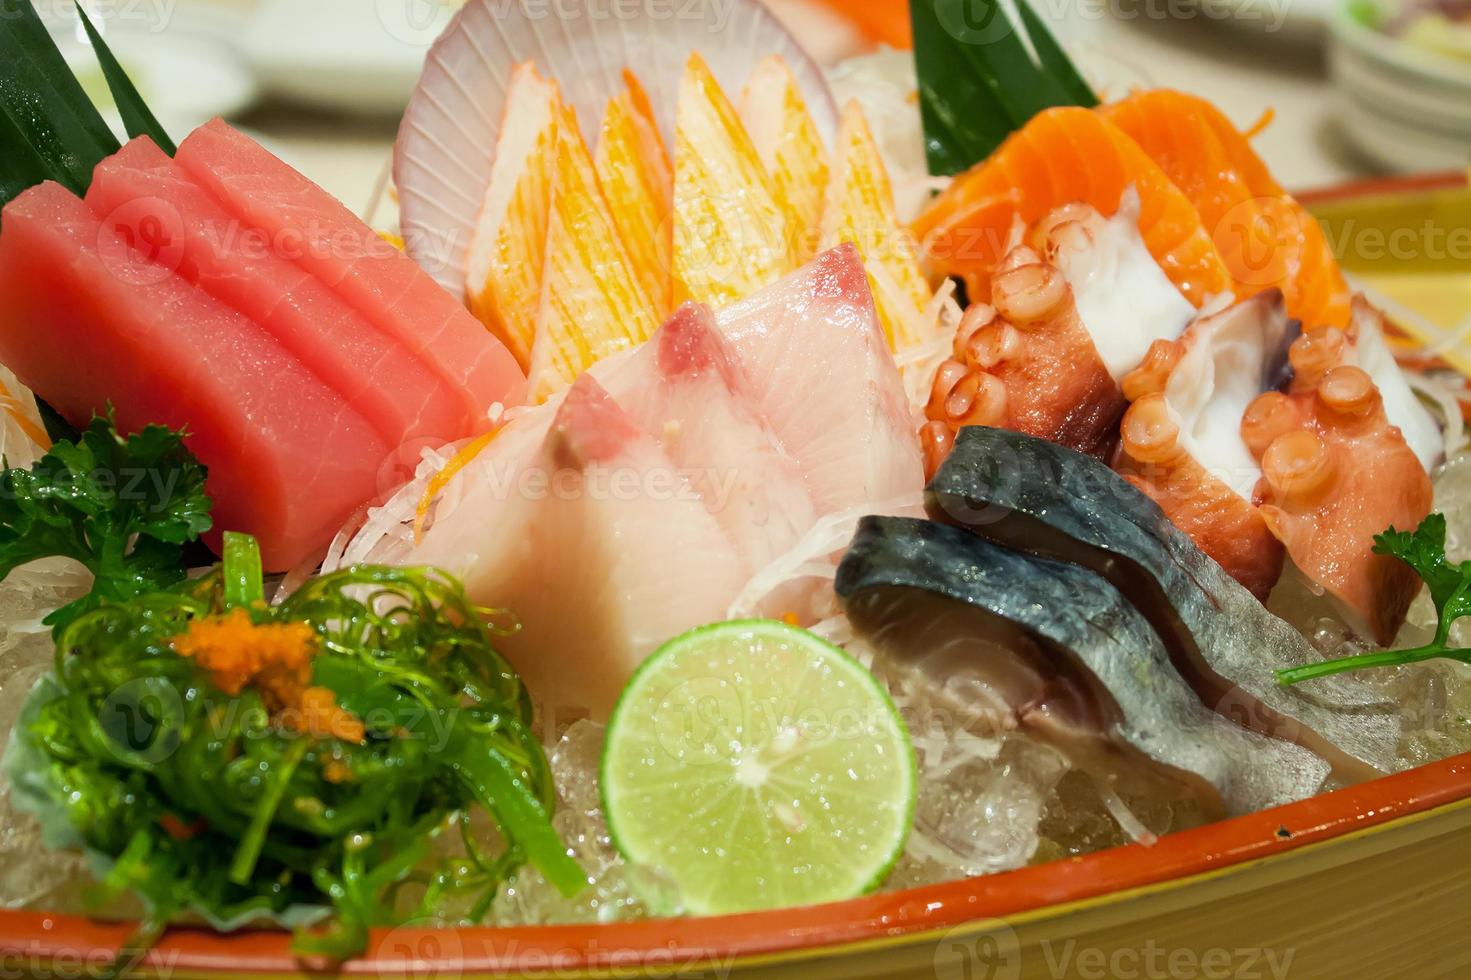 japanisches Essen Sashimi Set foto